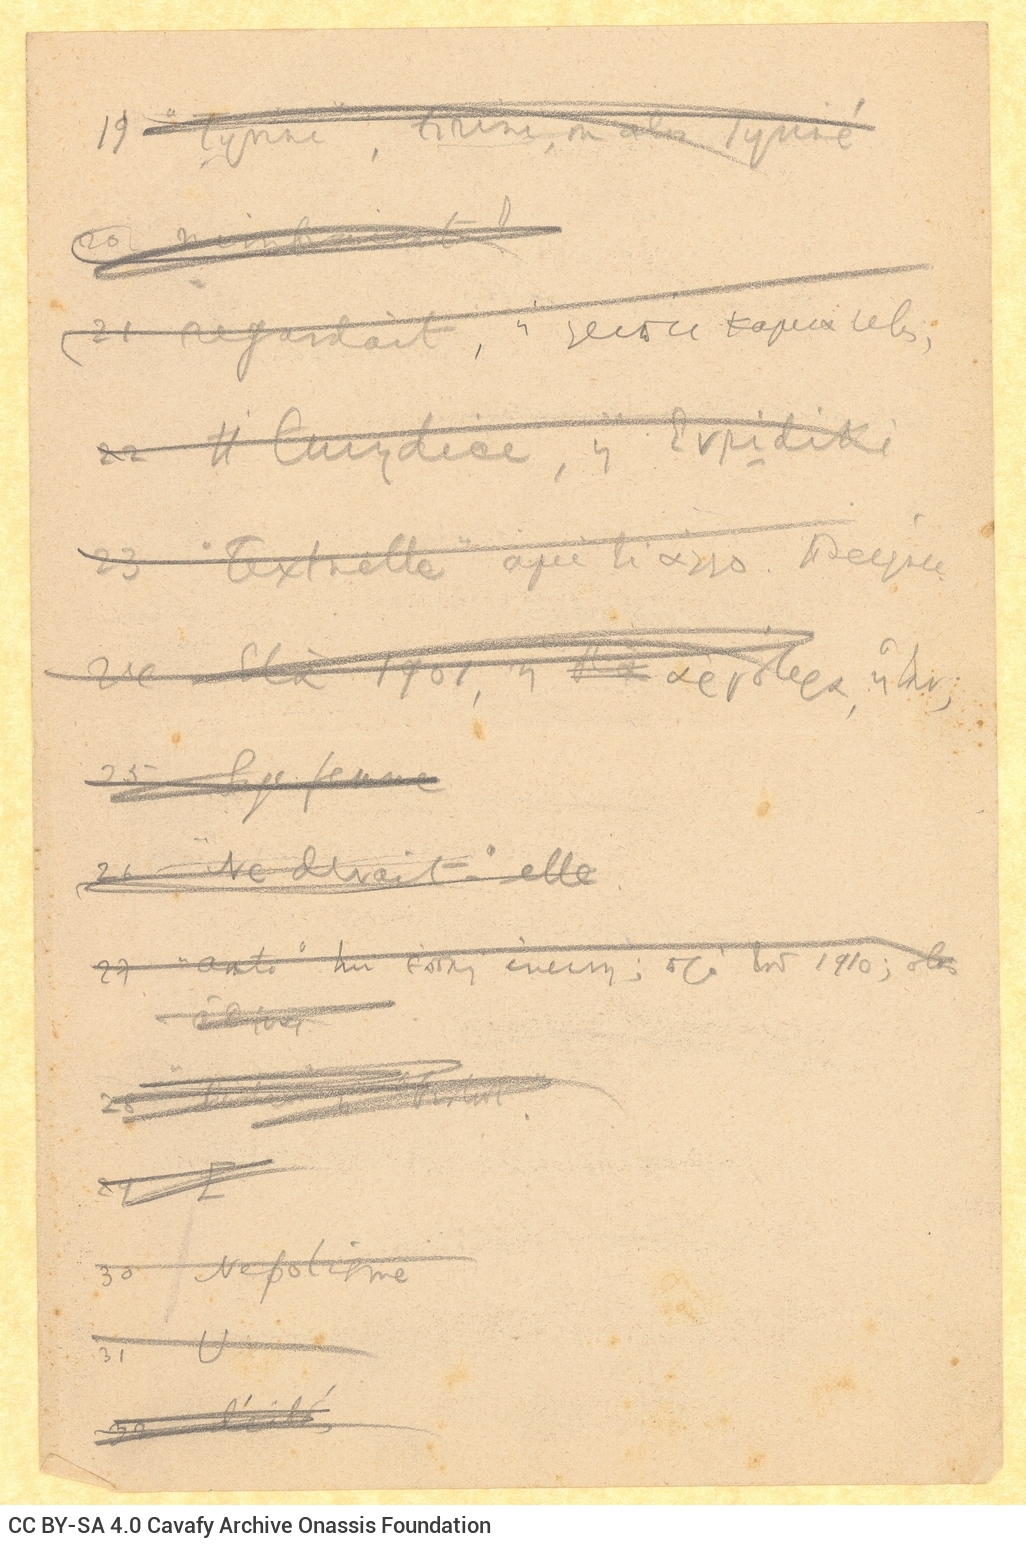 Χειρόγραφες σημειώσεις του Καβάφη σε όλες τις όψεις τεσσάρων φύλλ�